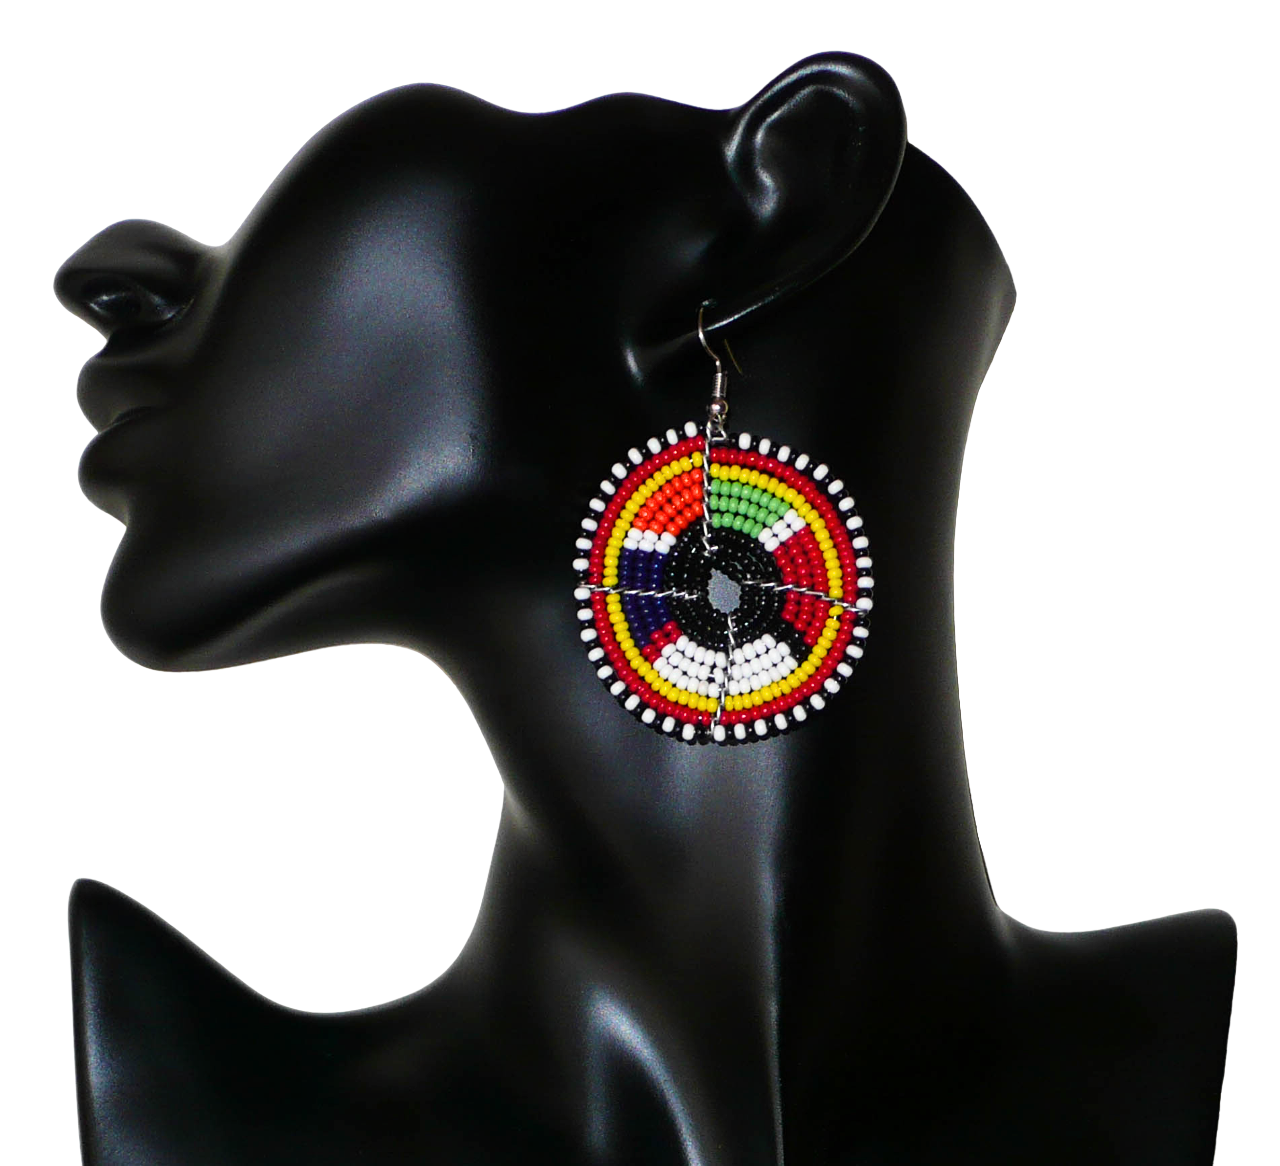 Boucles d'oreilles ethniques à motifs traditionnels Massai noirs et multicolores. De taille moyenne, elles mesurent 6,5 cm de long et 4,5 cm de large et se portent sur des oreilles percées.